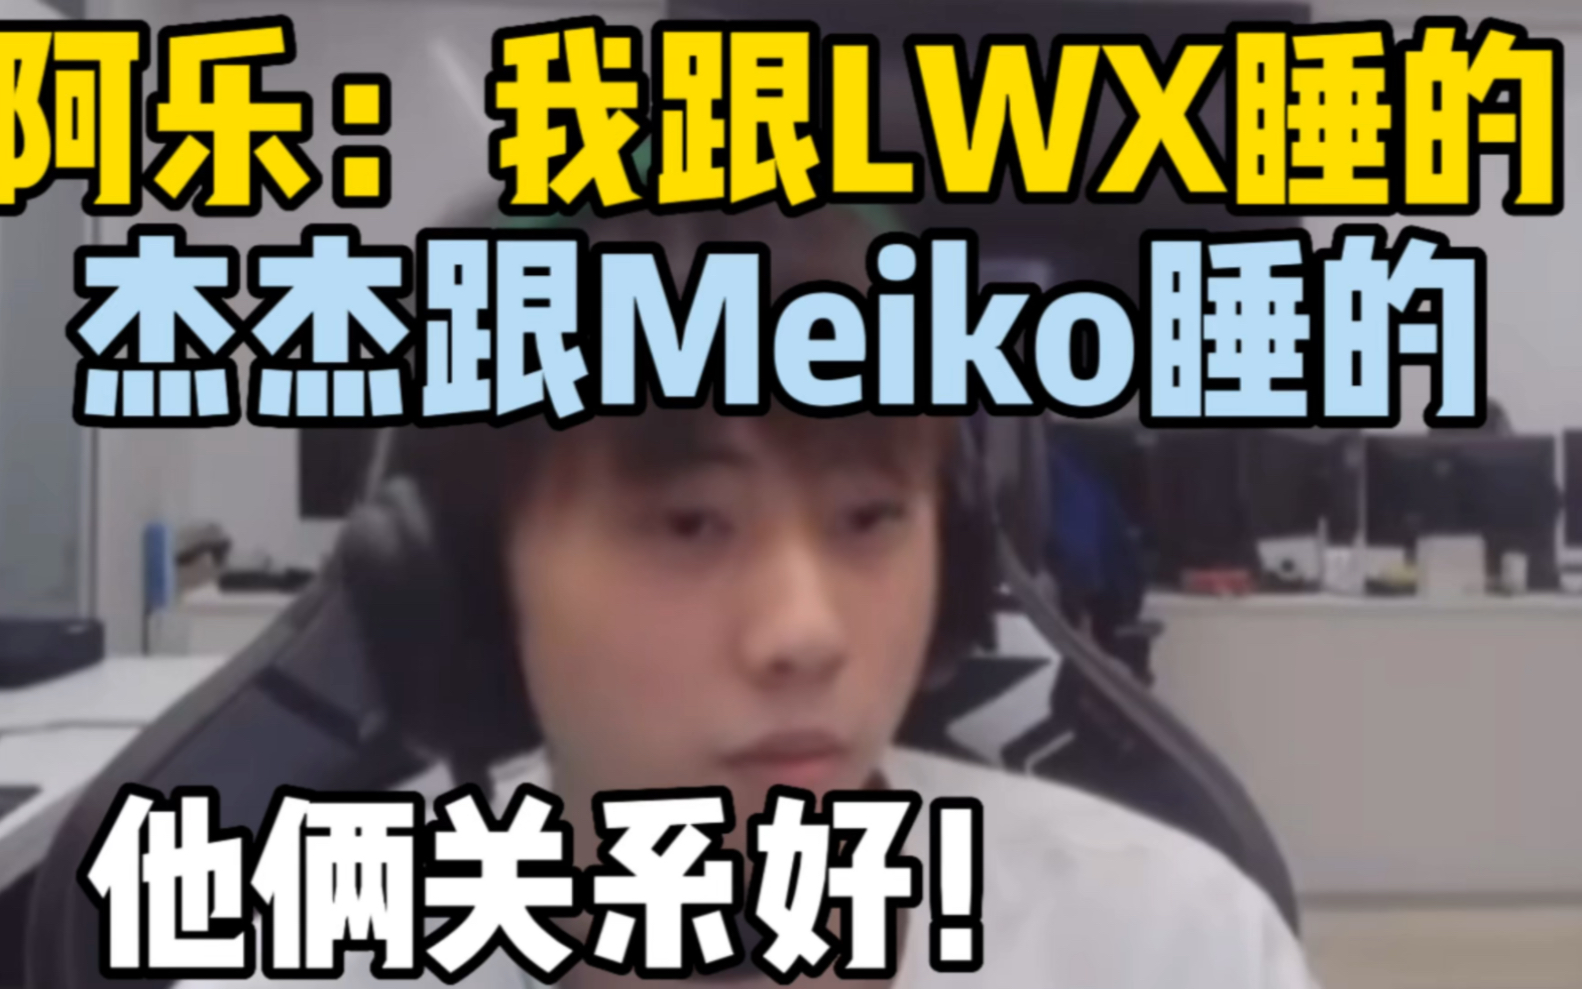 阿乐：我跟LWX睡的，杰杰跟Meiko睡的！他俩关系好！